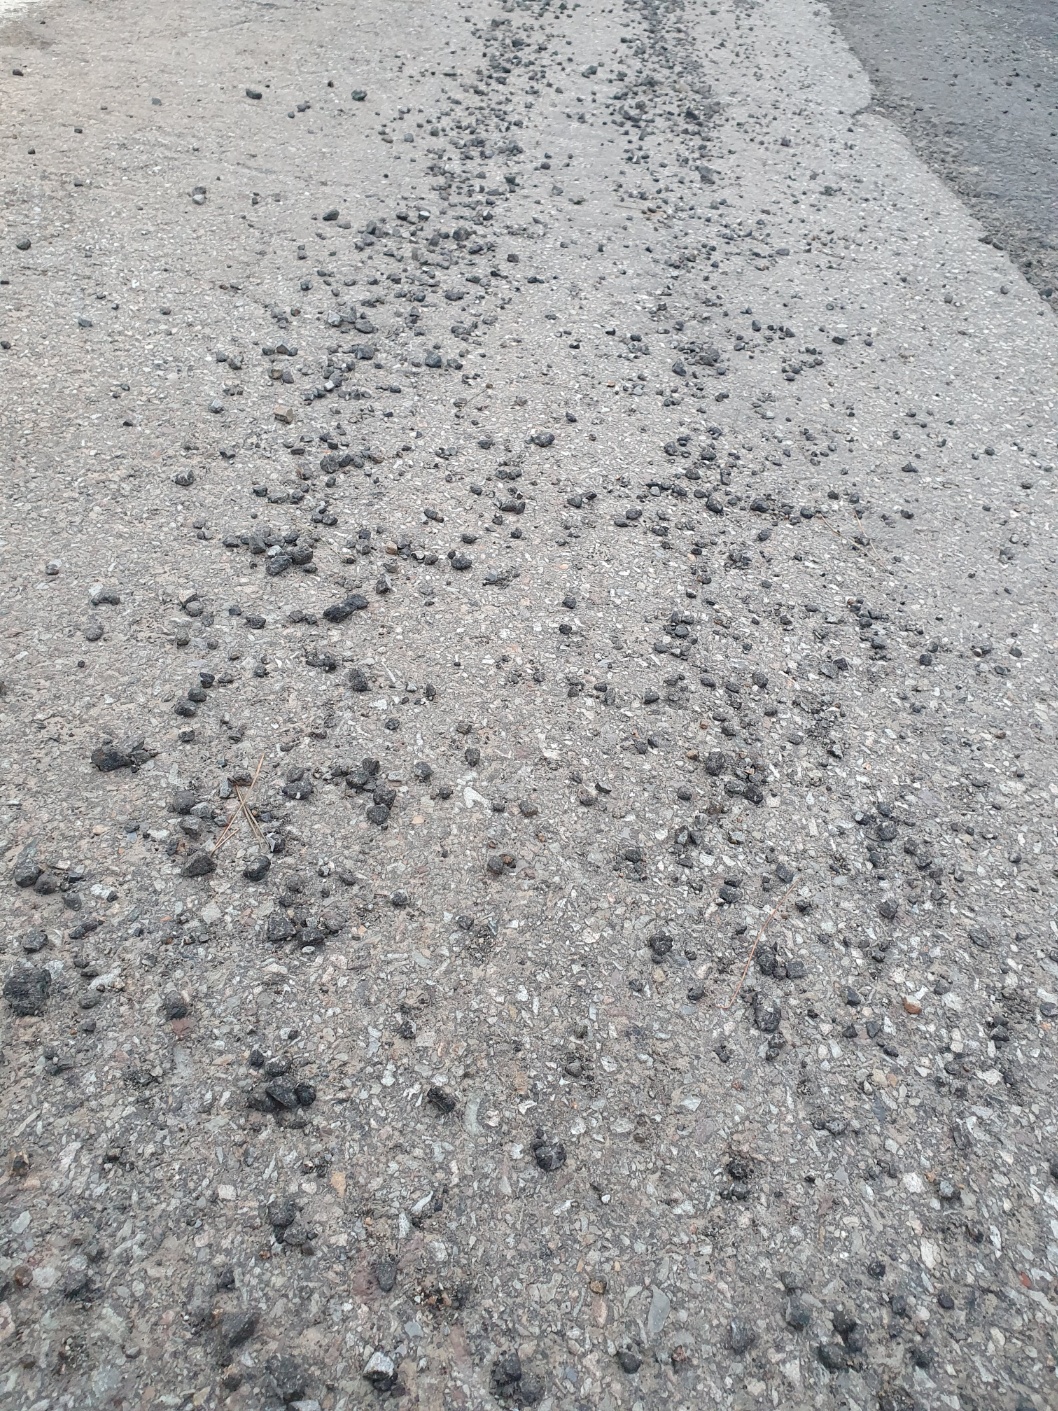 임시포장한 도로위 방치된 아스콘 조각과 돌들로 인한 차량훼손 1